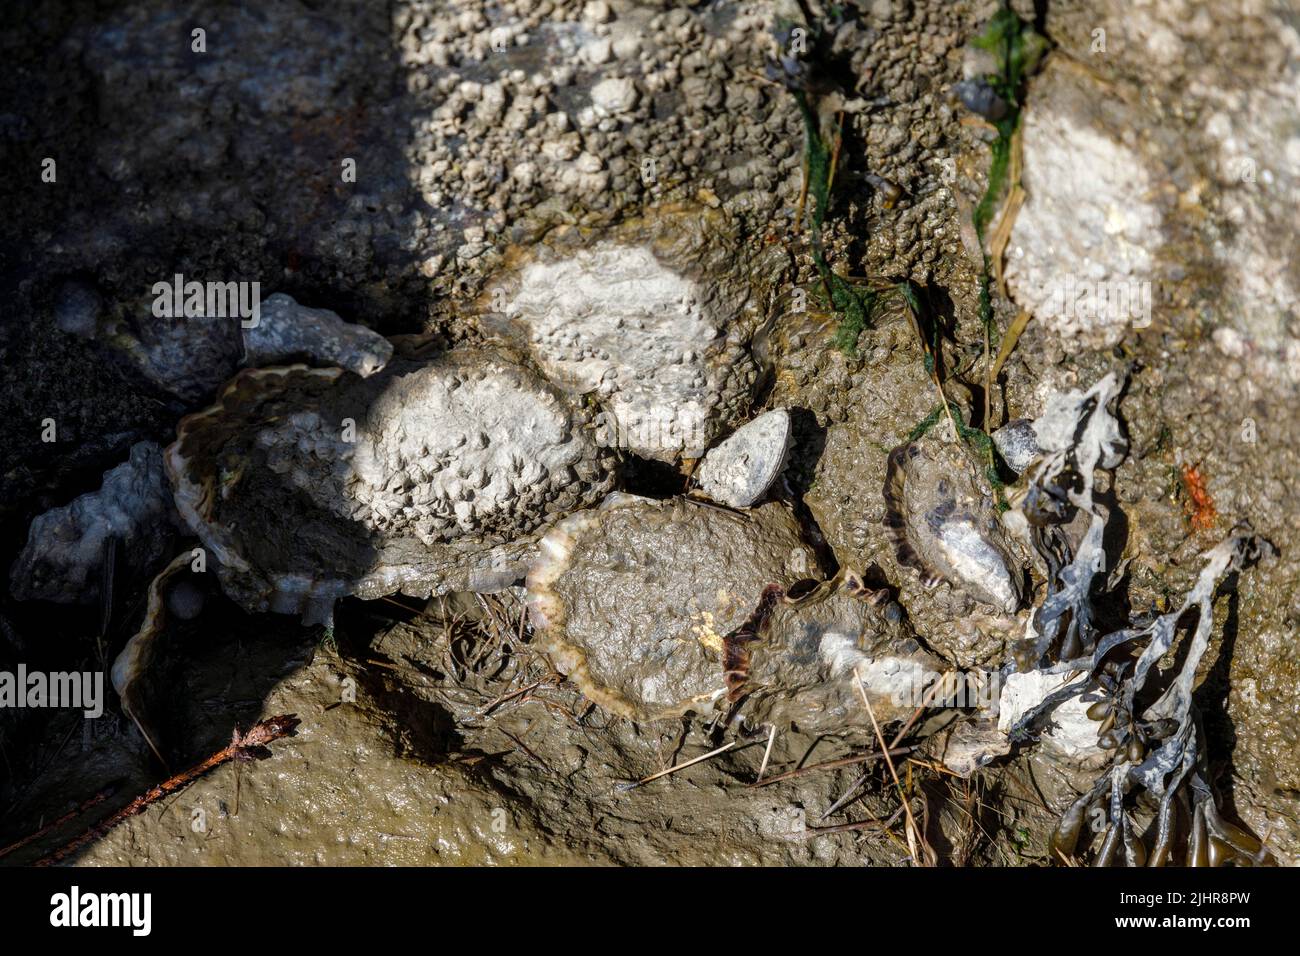 Sammeln von wilden Austern an der Nordseeküste in Nordfriesland, zuweilen schwer zu erkennen im Schlamm zwischen Steinen Stock Photo